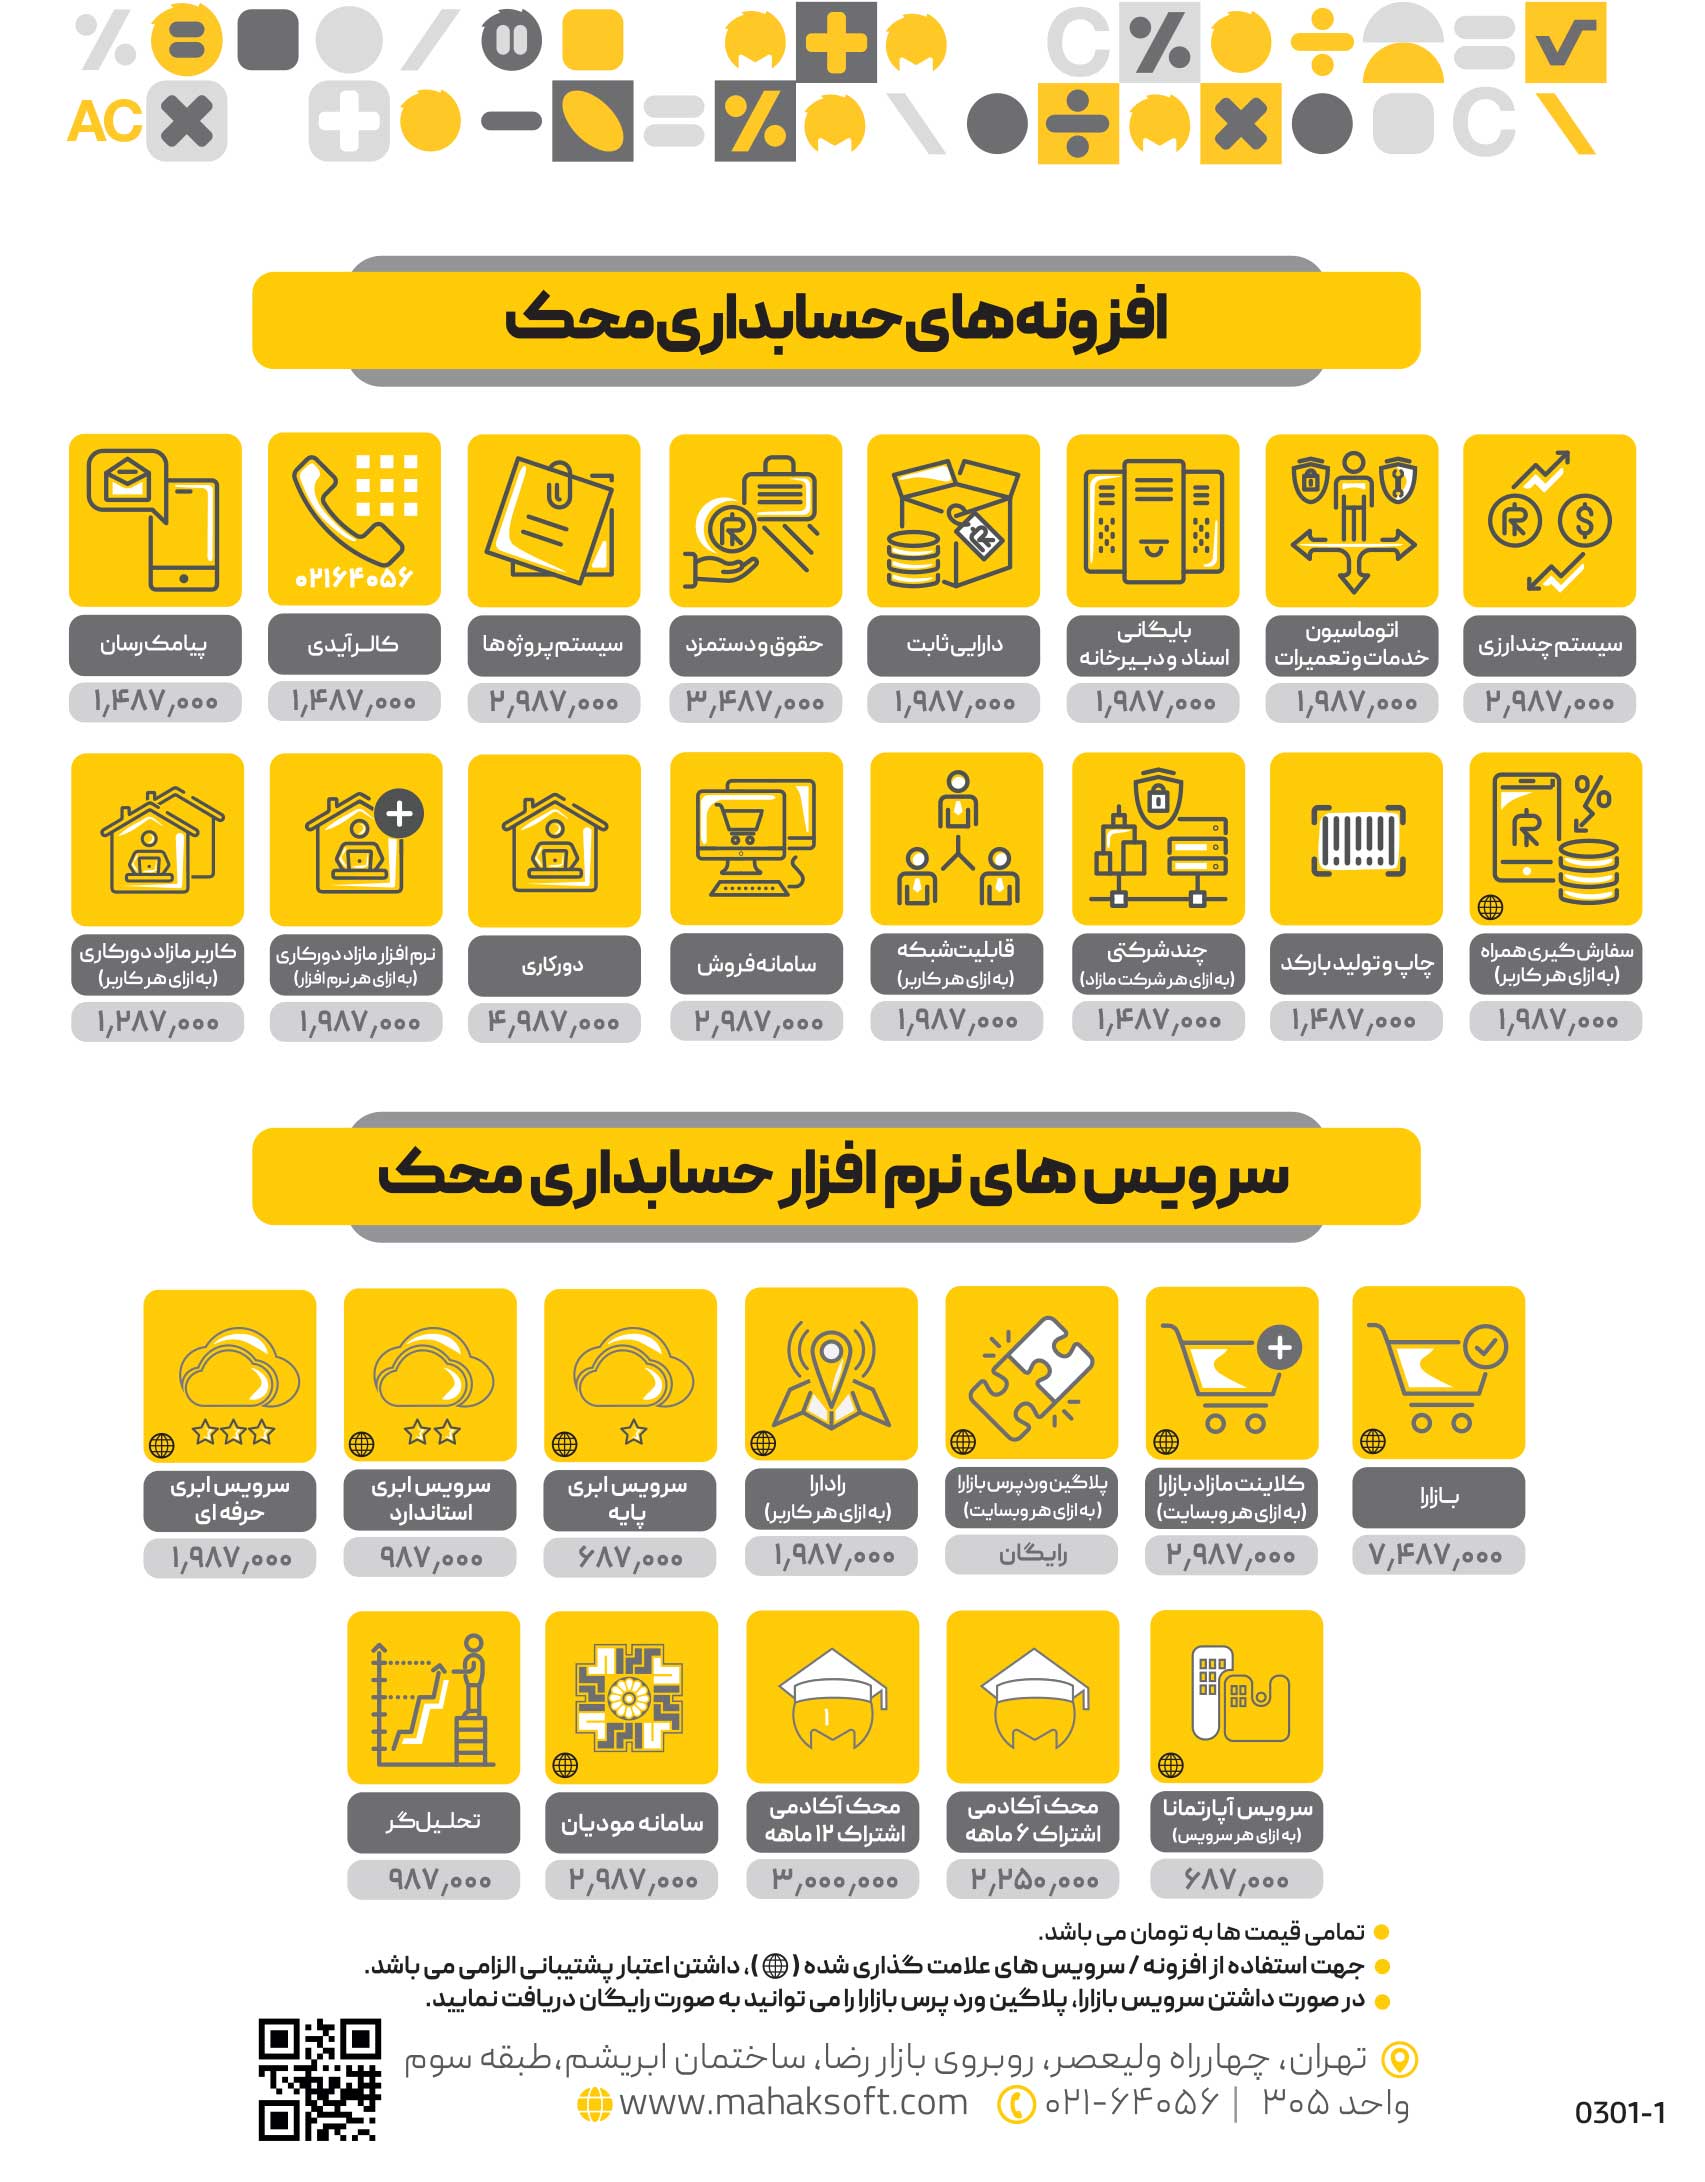 نرم افزار حسابداری در تهران | افزونه های حسابداری محک